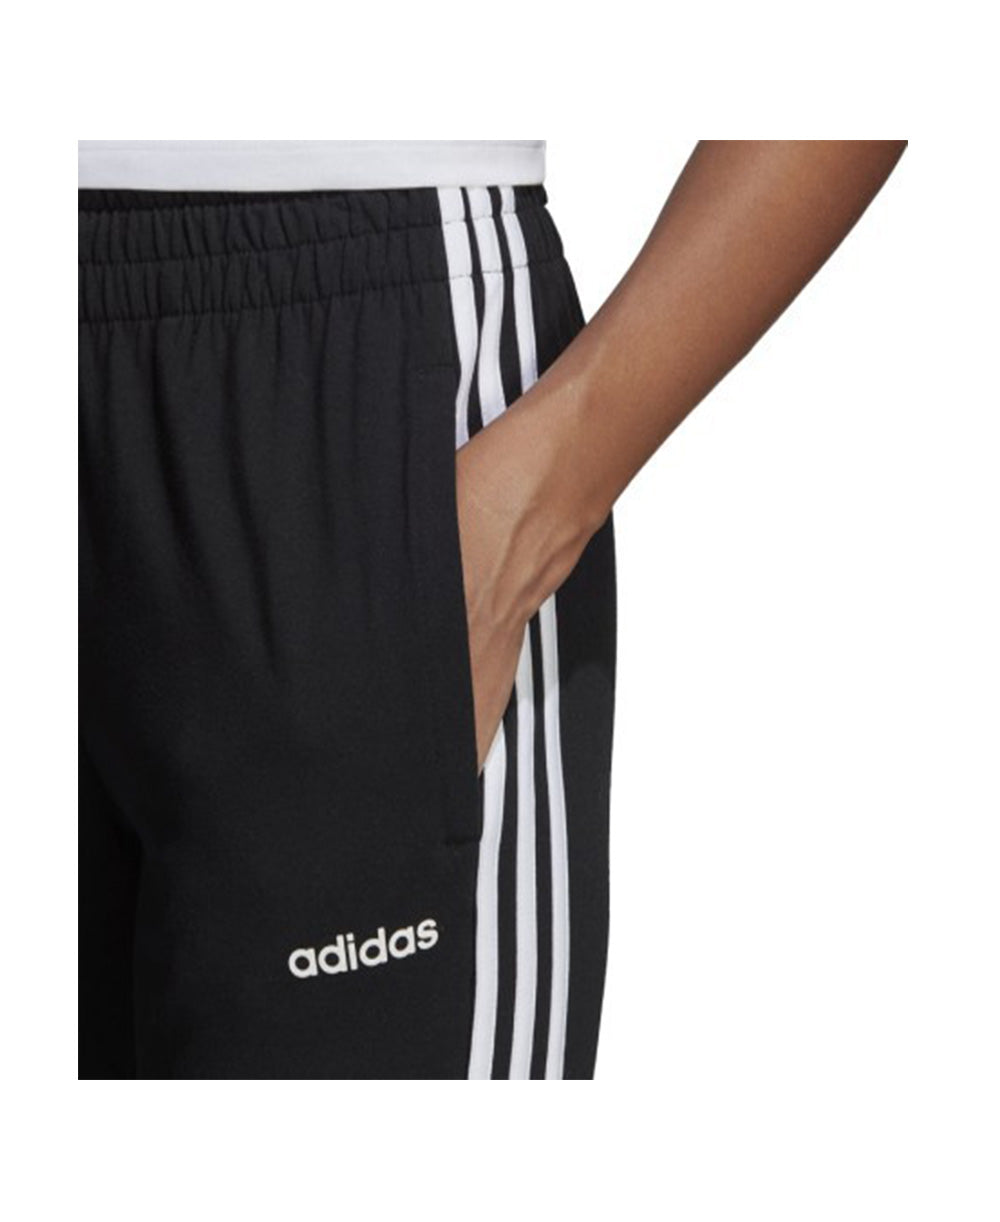 ADIDAS essentials 3-stripes moteriškos sportinės kelnės